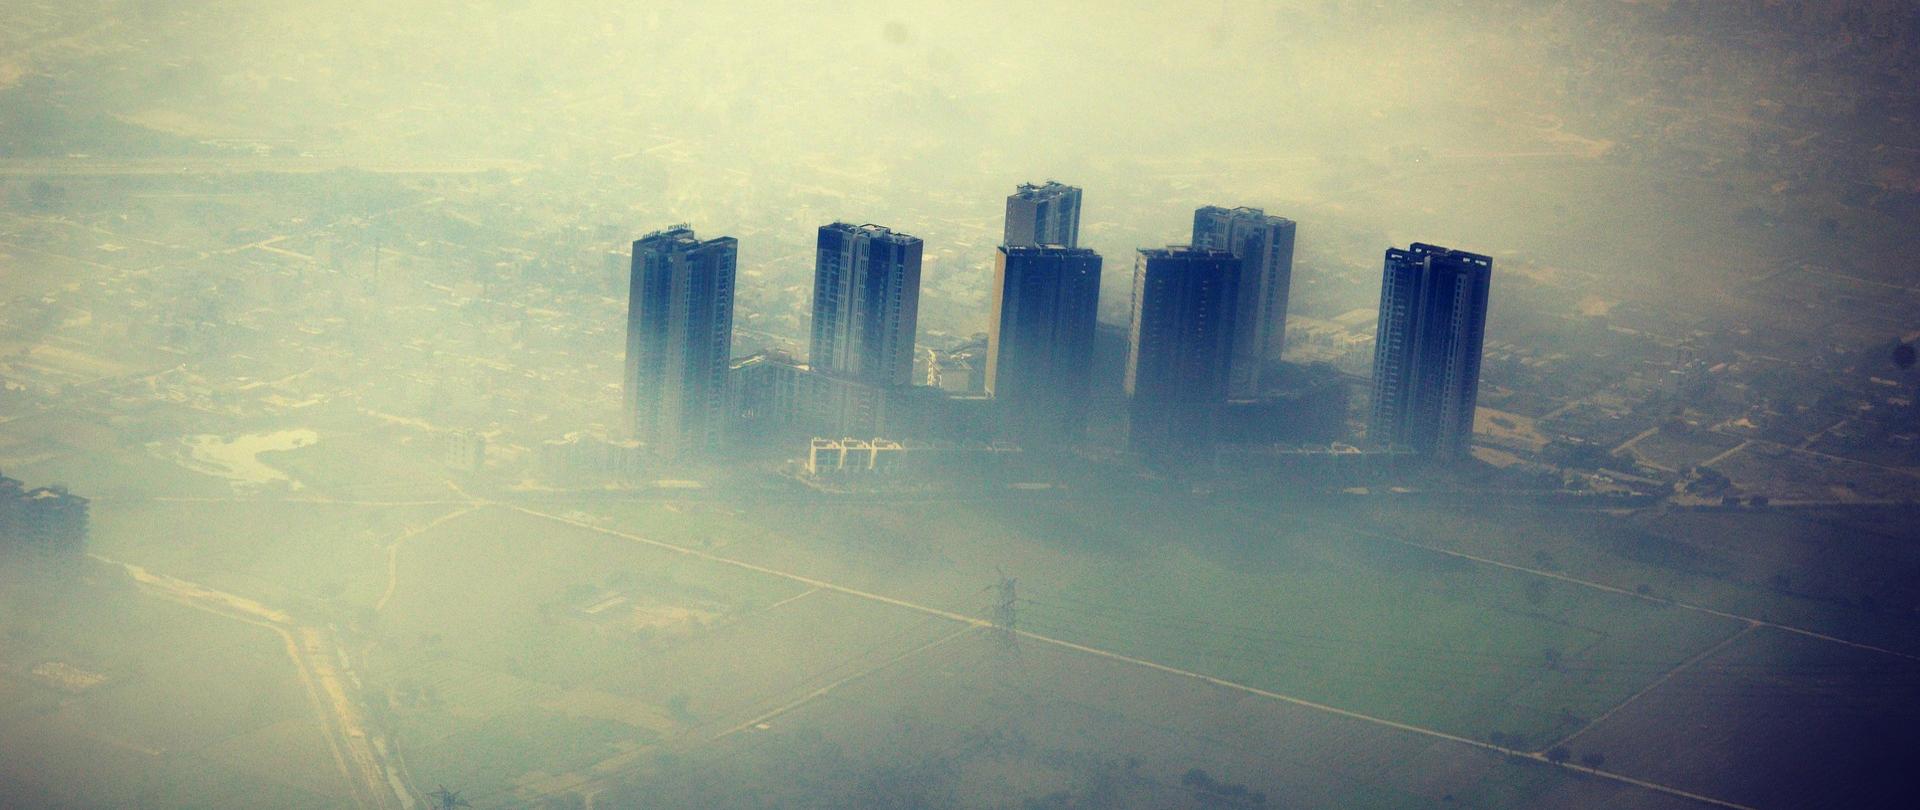 Zdjęcia przedstawia miasto w smogu.